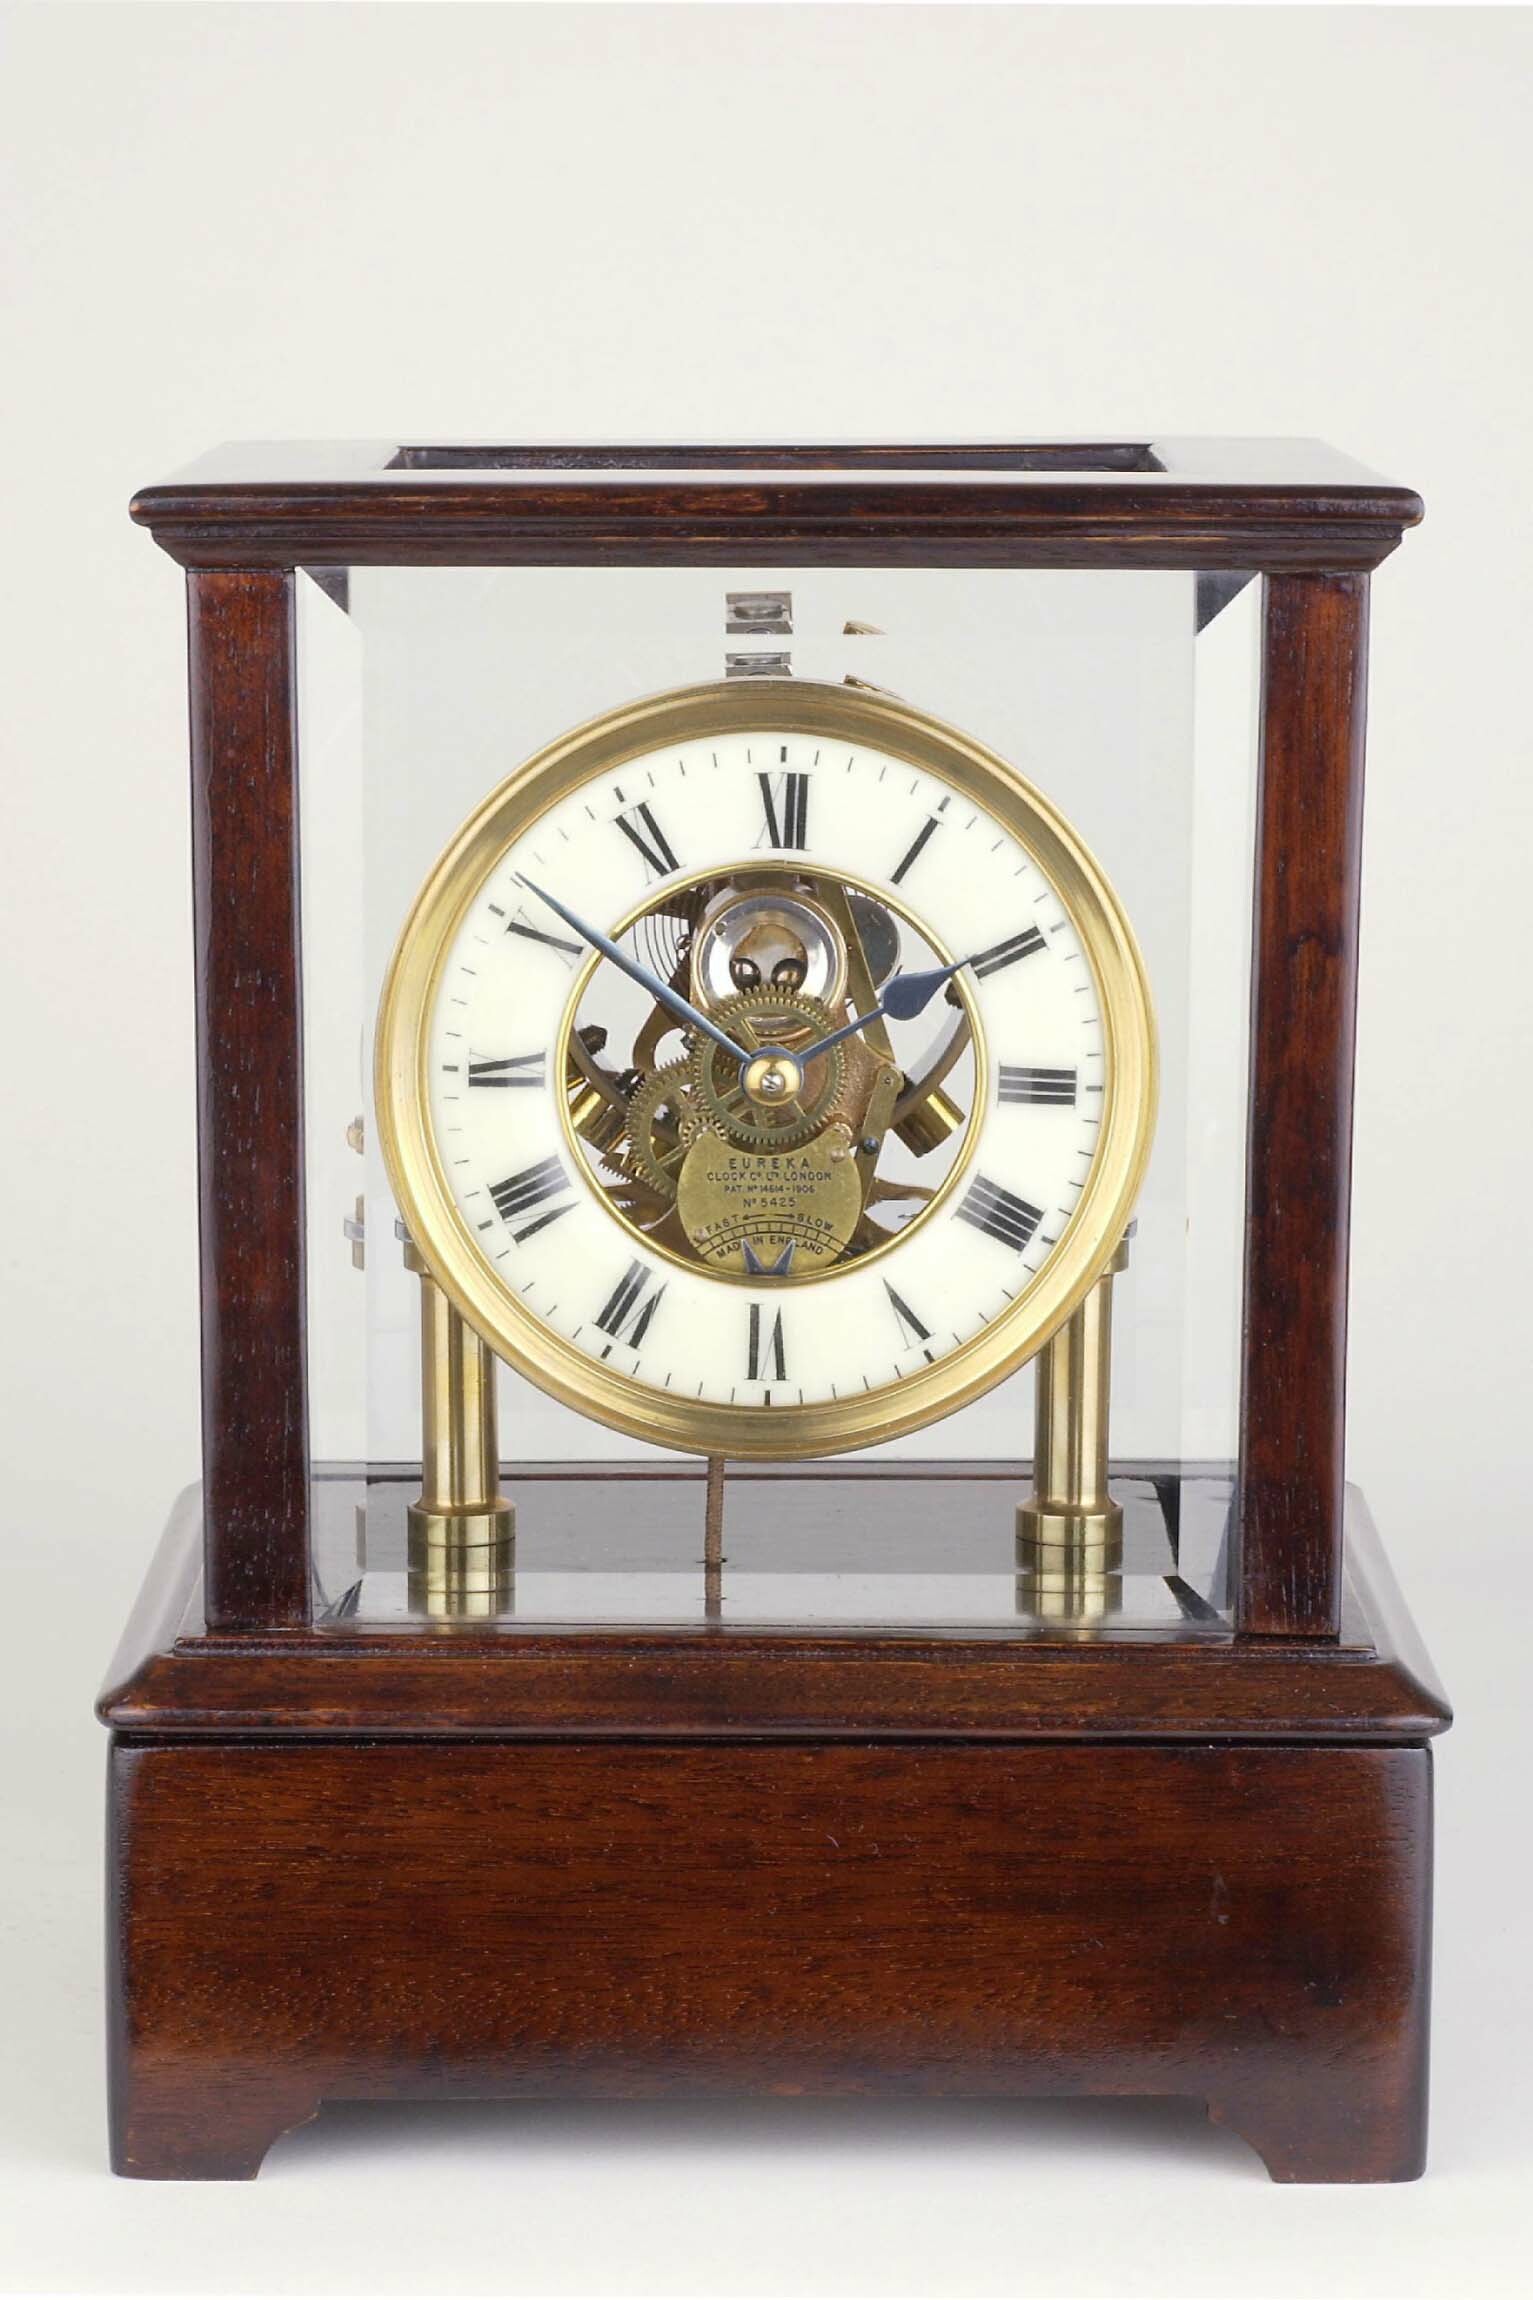 Tischuhr, Eureka, London, um 1912 (Deutsches Uhrenmuseum CC BY-SA)